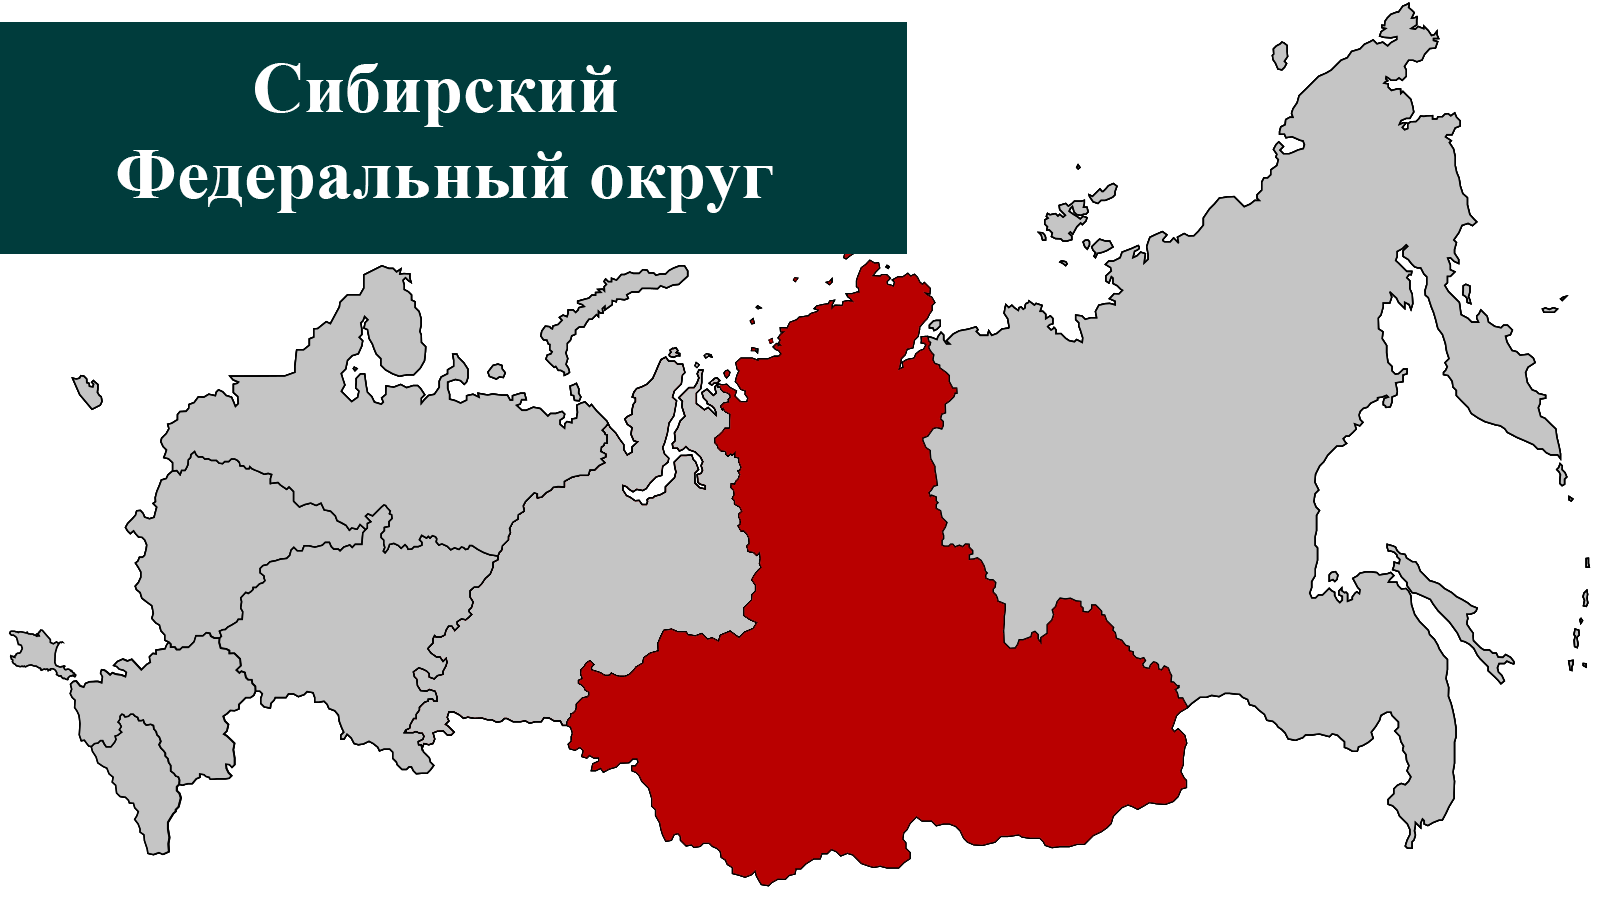 Сайт сибирского федерального округа